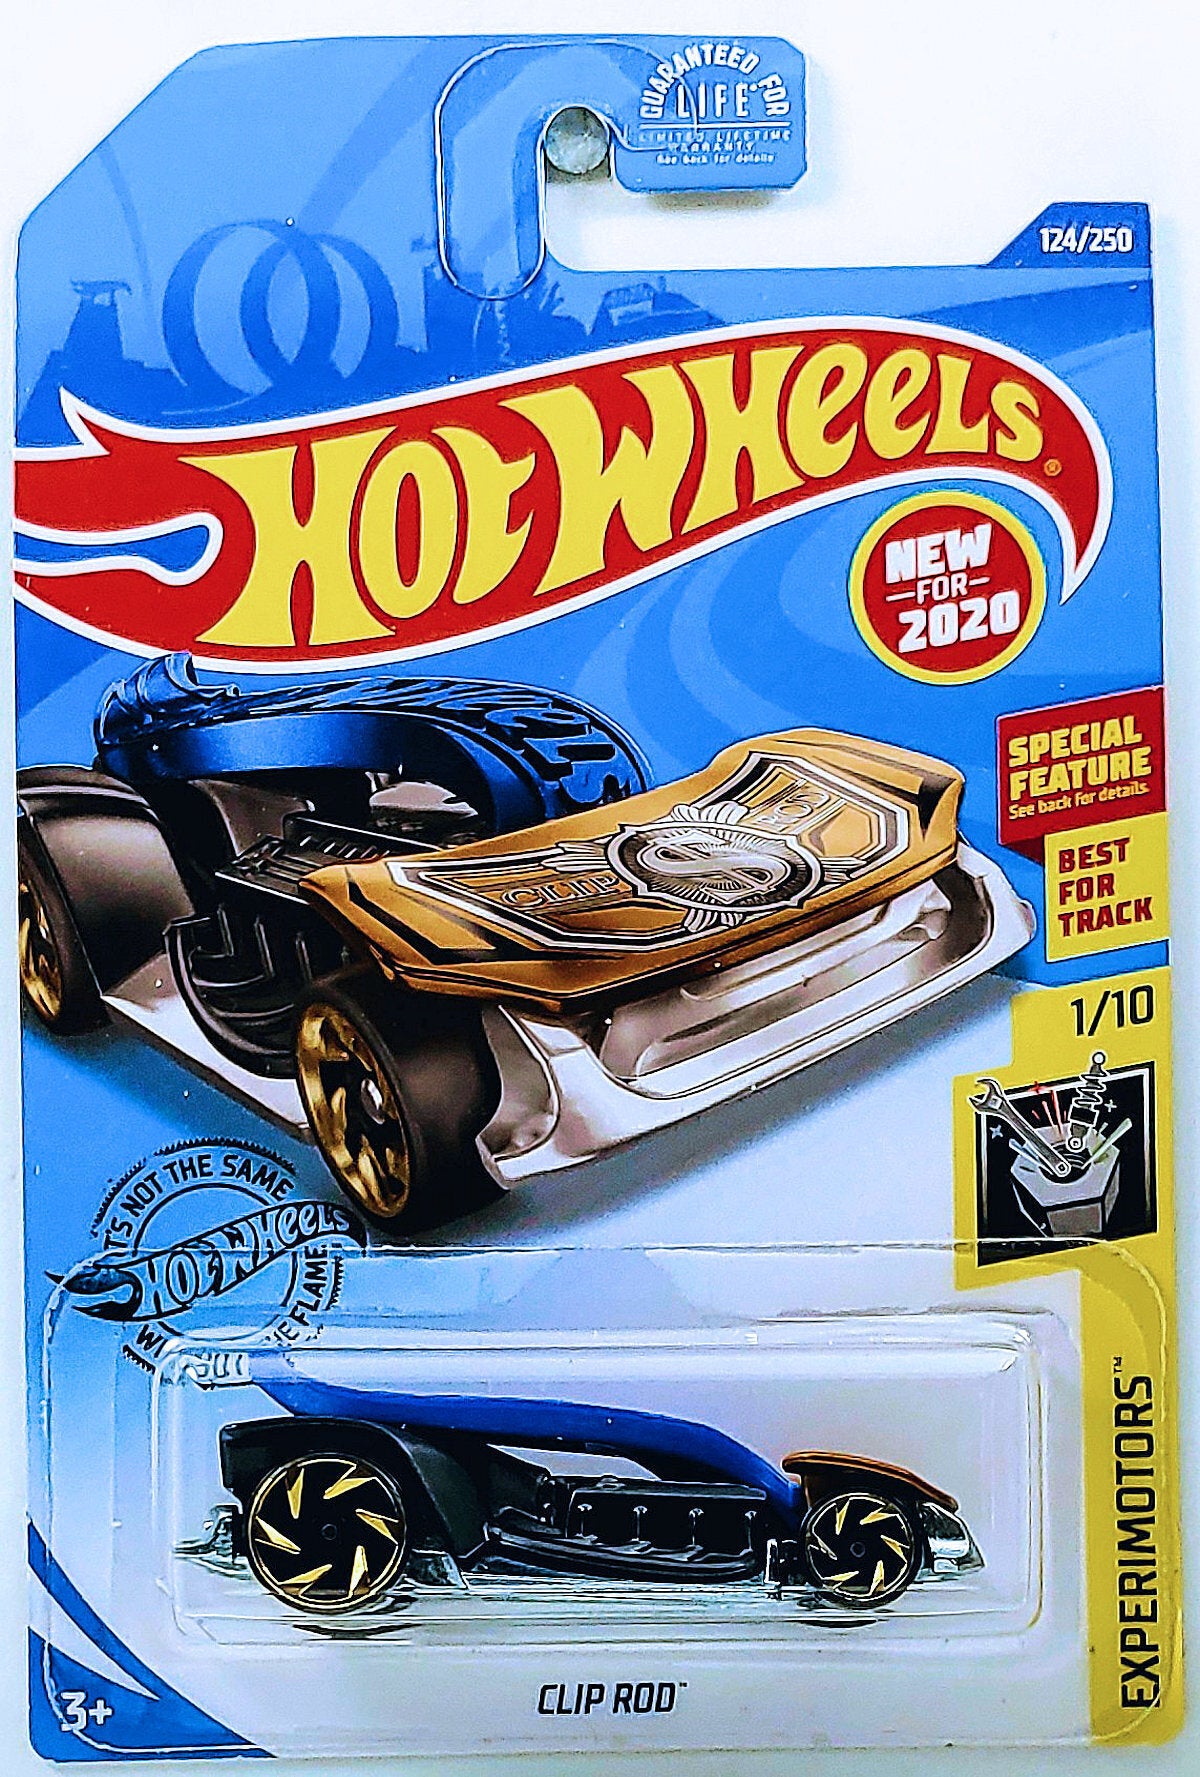 Hot Wheels 2020 - Collector # 124/250 - Experimotors 1/10 - New Models - Clip Rod - Blue